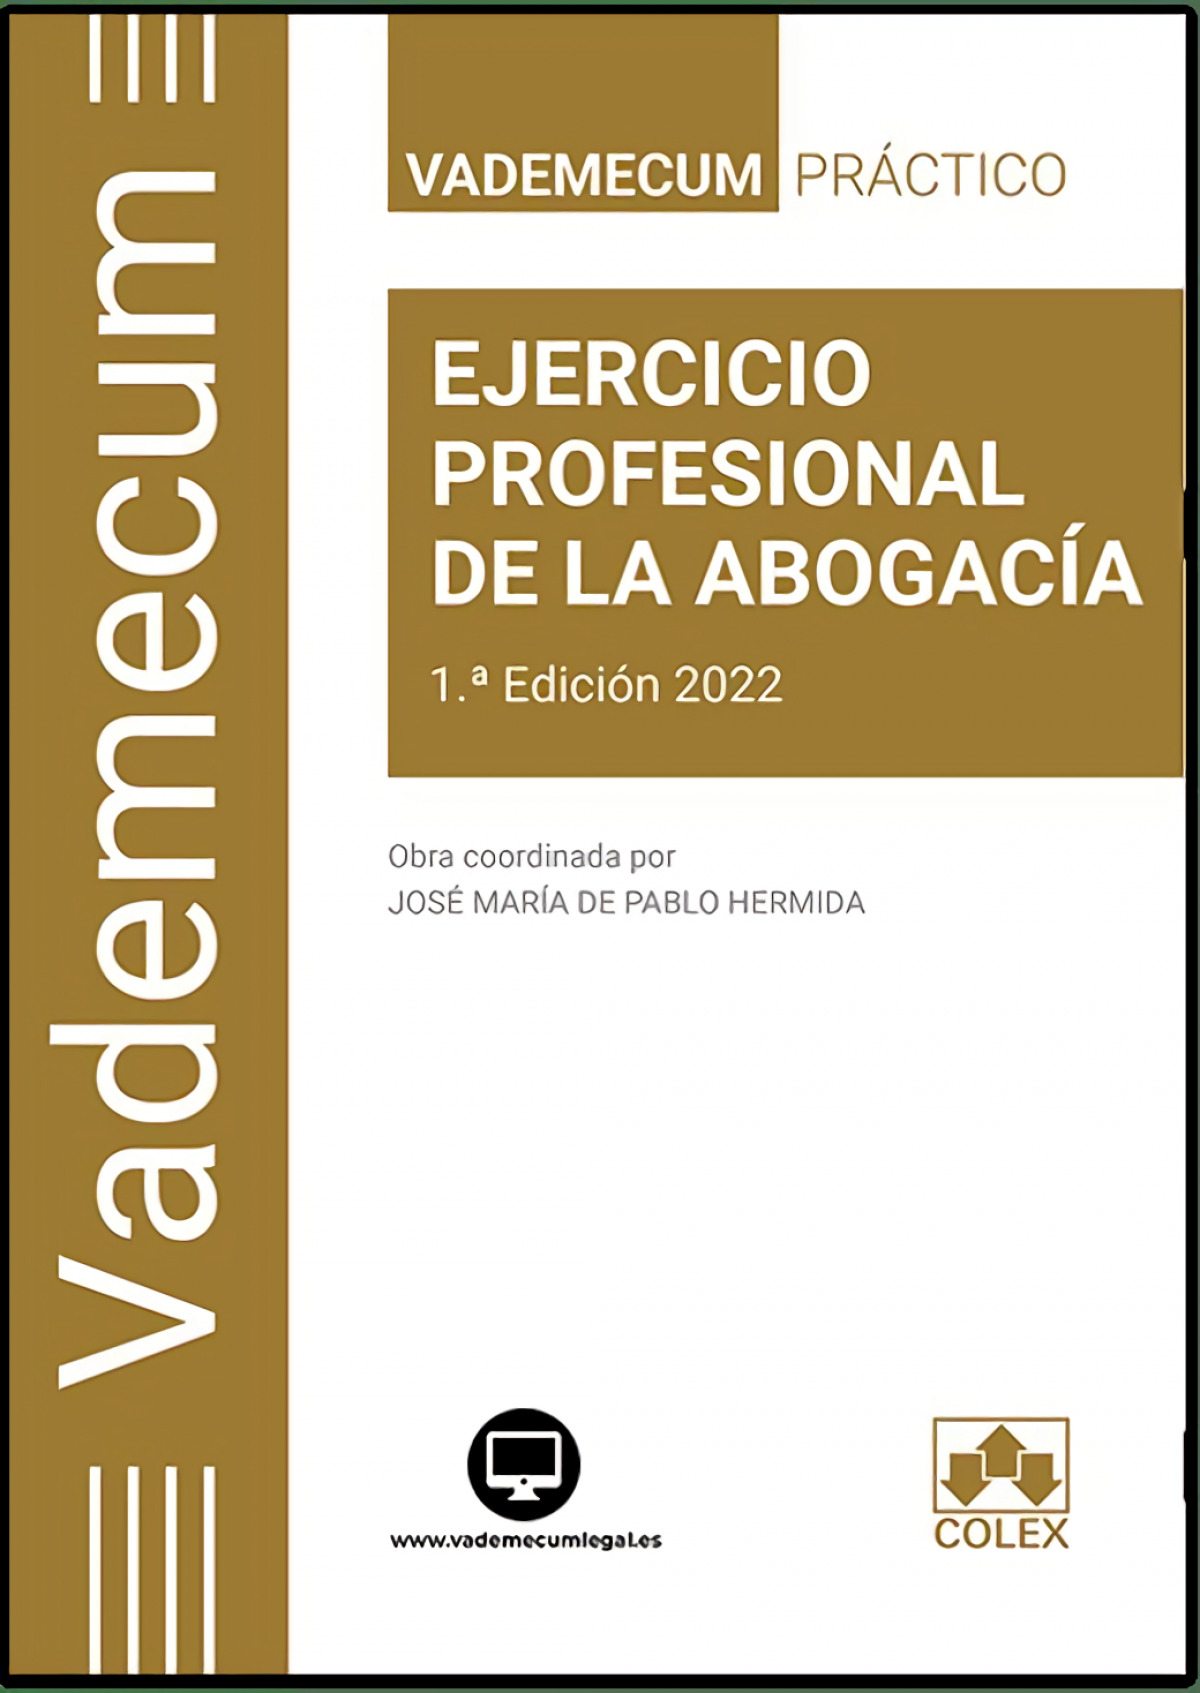 Vademecum / EJERCICIO PROFESIONAL DE LA ABOGACÍA